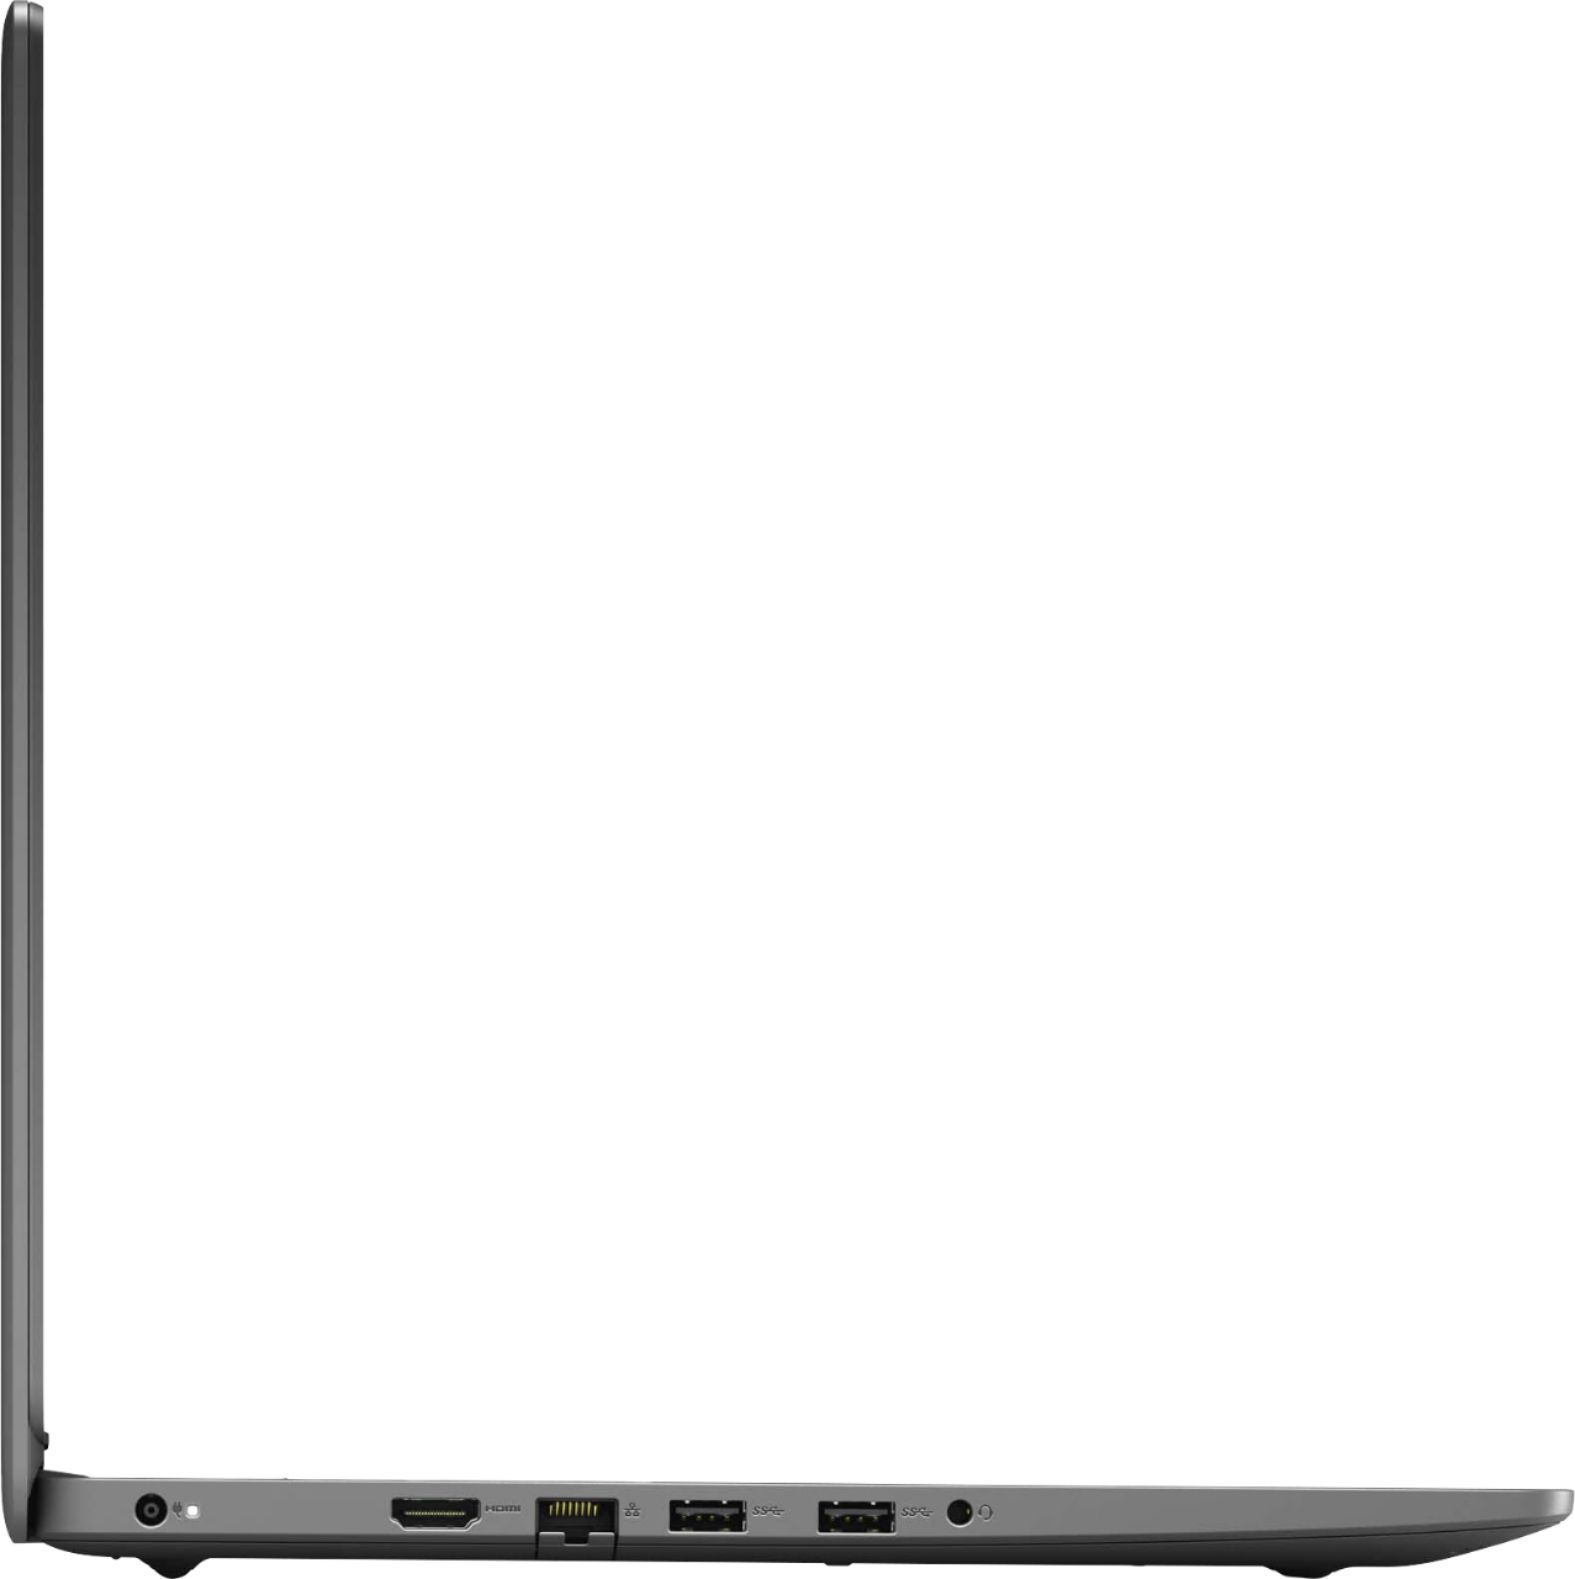 Angle View: Dell - Latitude 7000 14" Laptop - Intel Core i7 - 16 GB Memory - 512 GB SSD - Carbon Fiber, Black